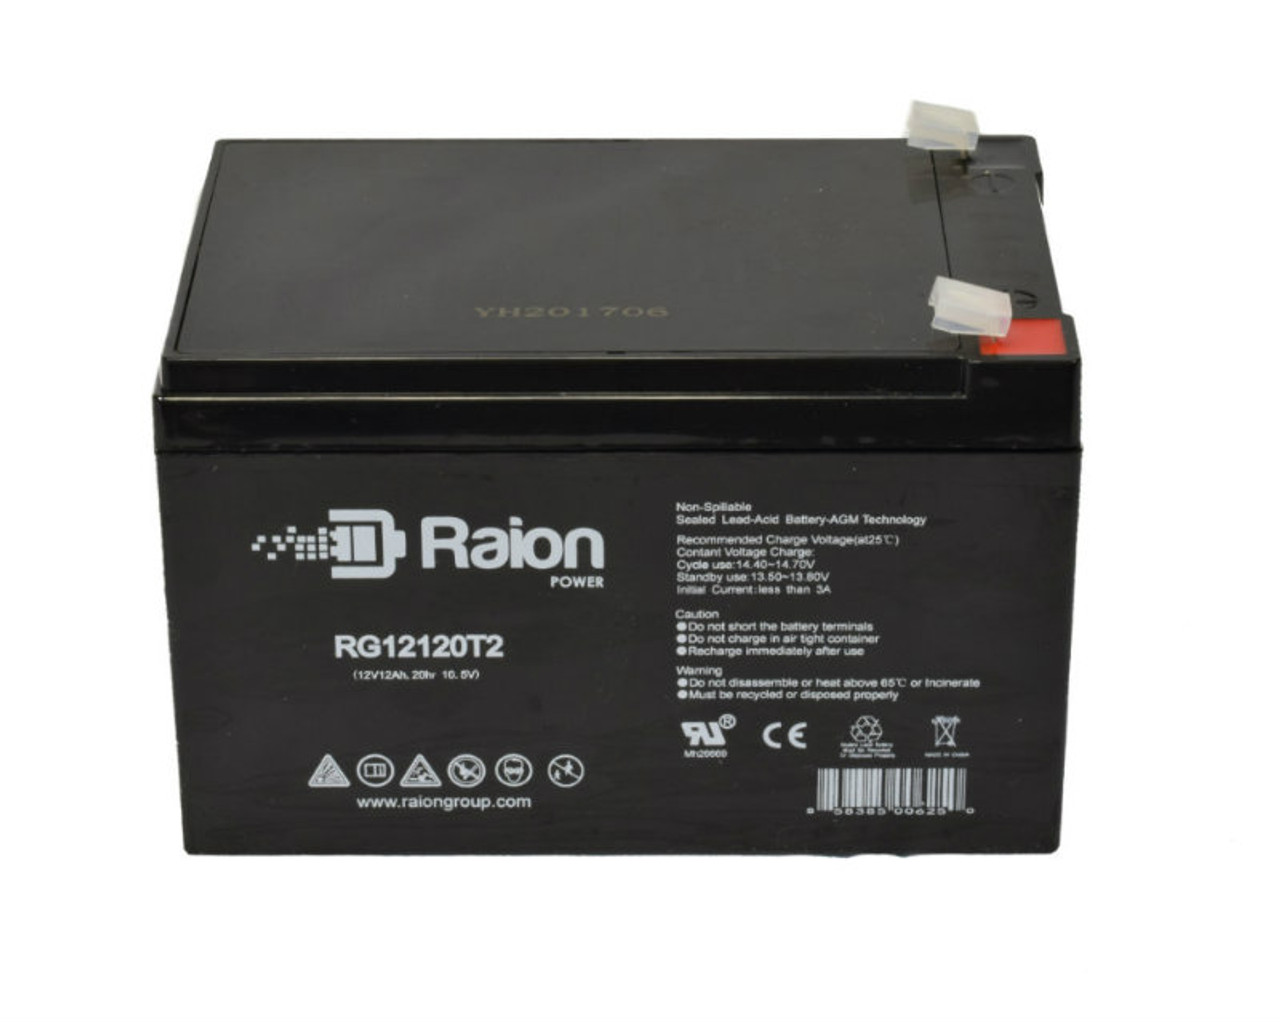 Raion Power RG12120T2 SLA Battery for Kinghero SJ12V10Ah